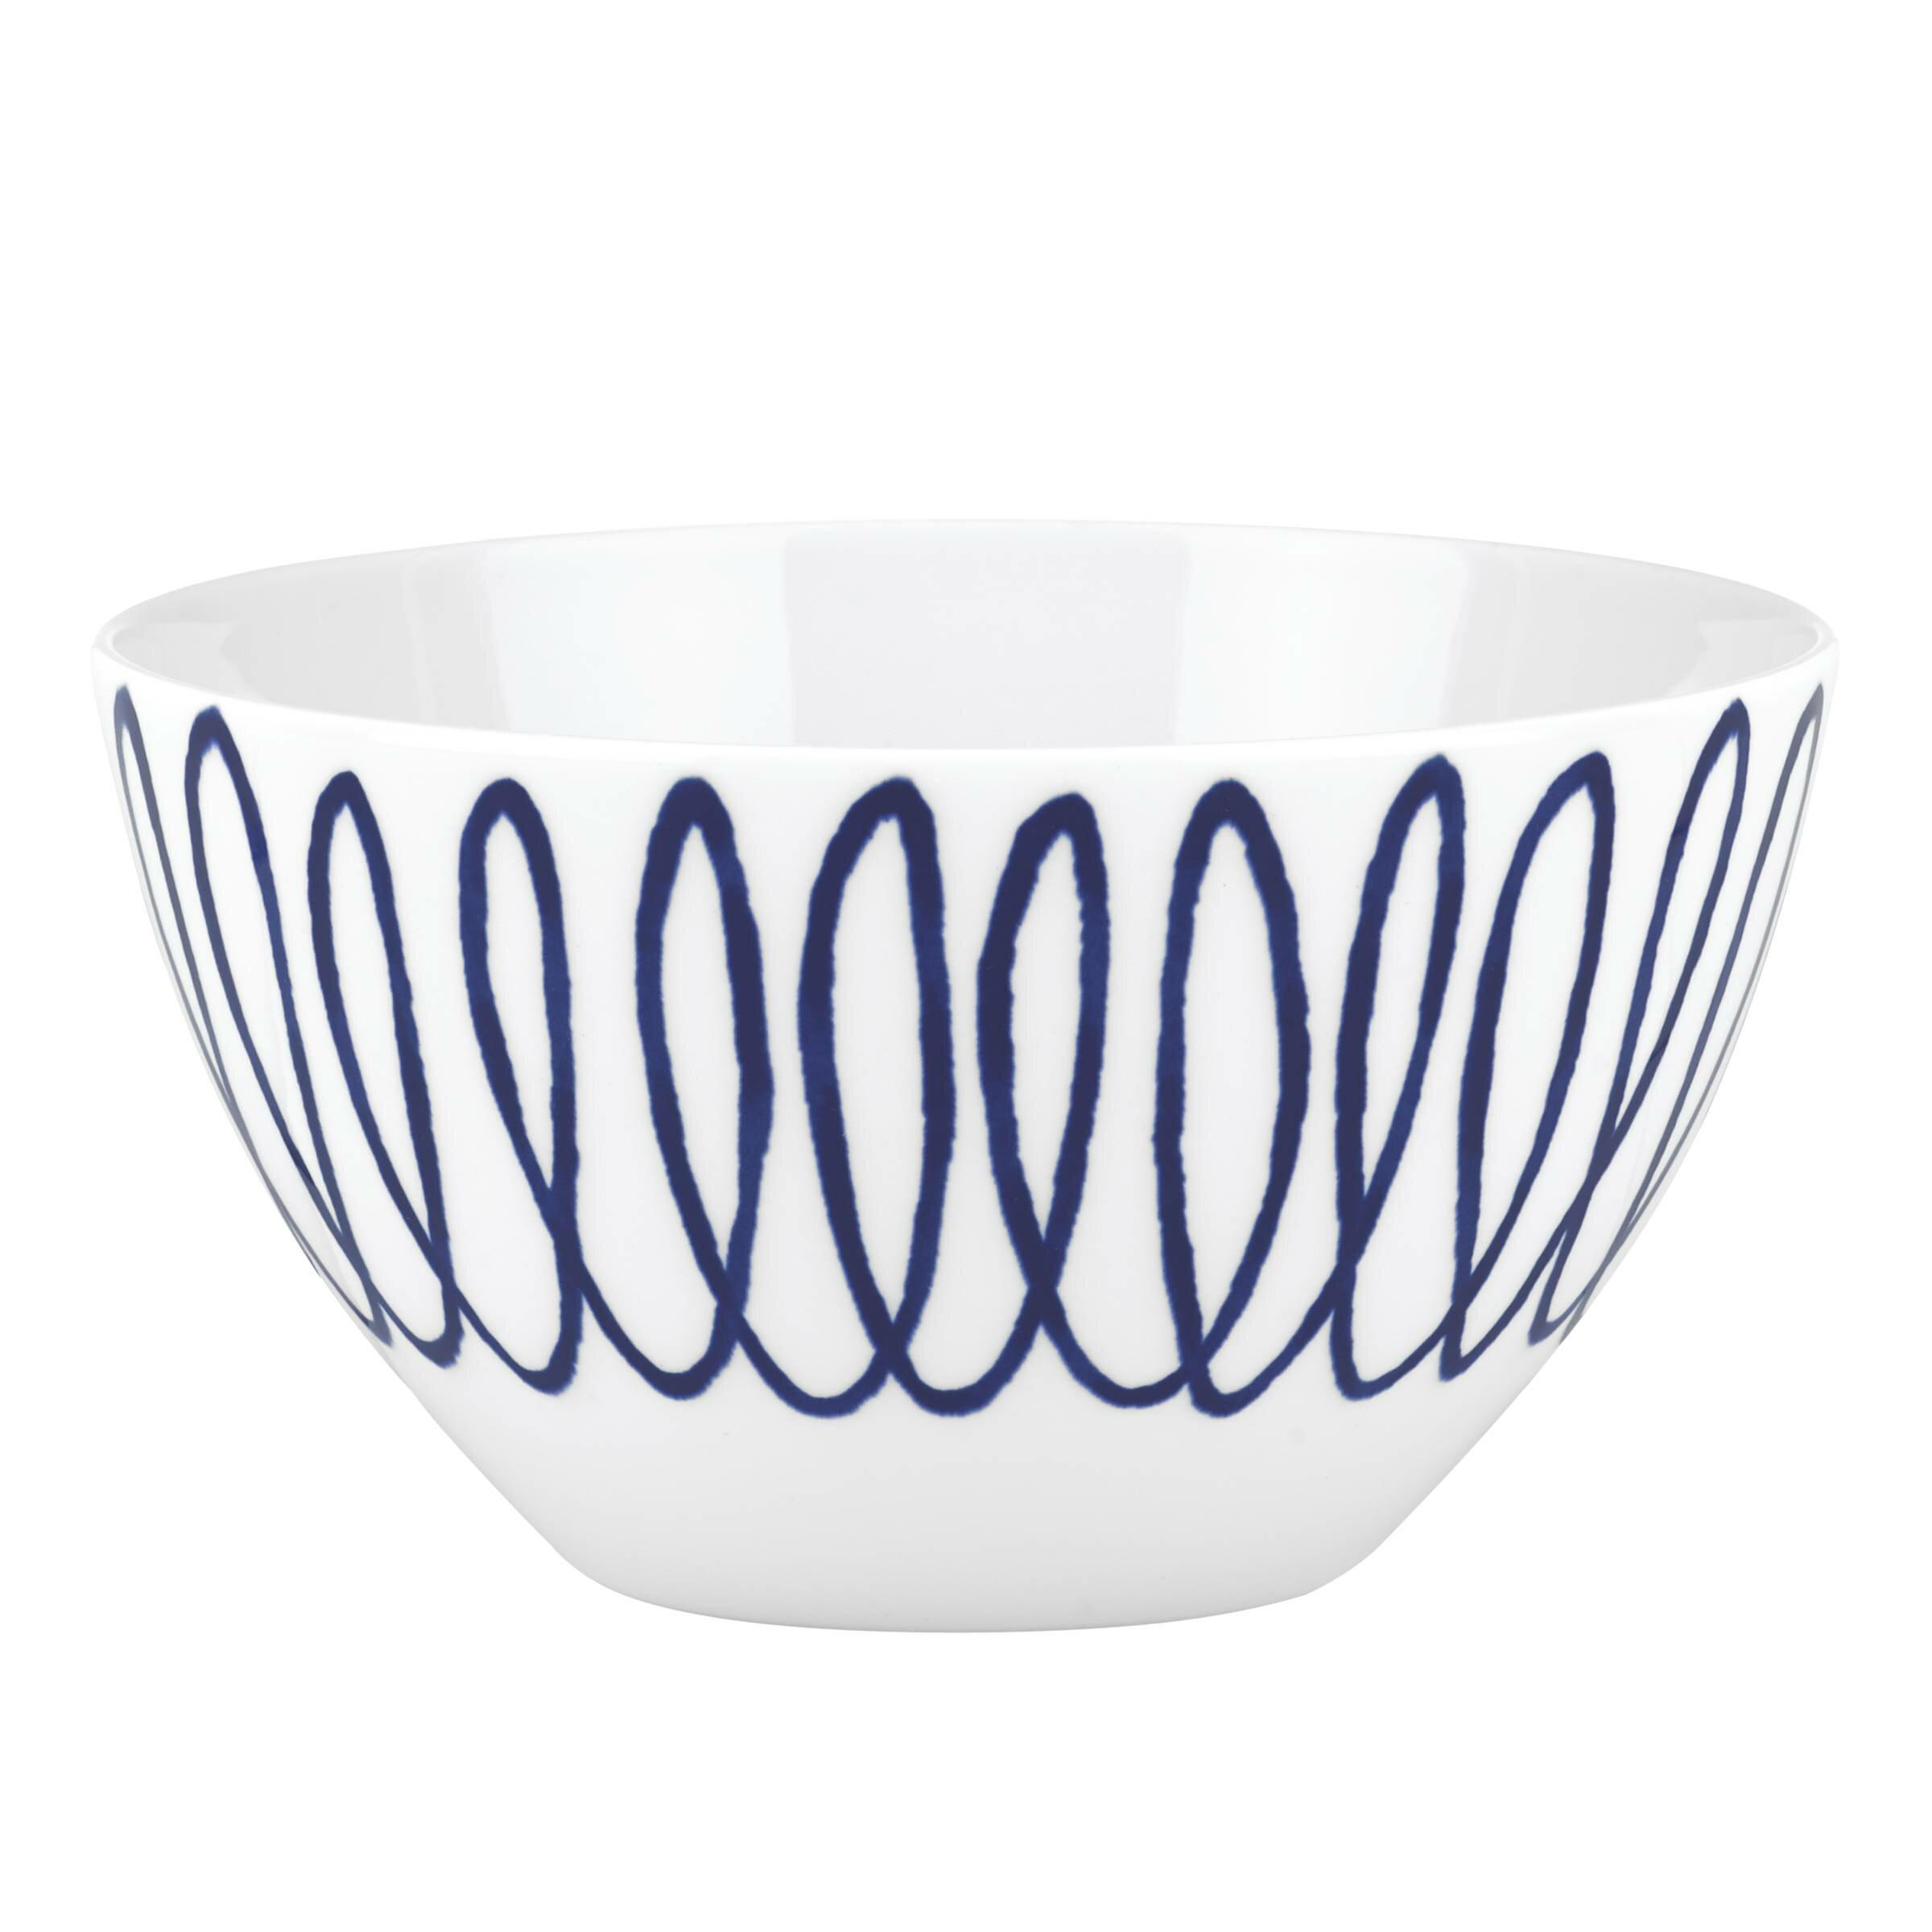 https://assets.wfcdn.com/im/46248280/compr-r85/3072/30723504/kate-spade-new-york-charlotte-street-soup-cereal-bowl.jpg